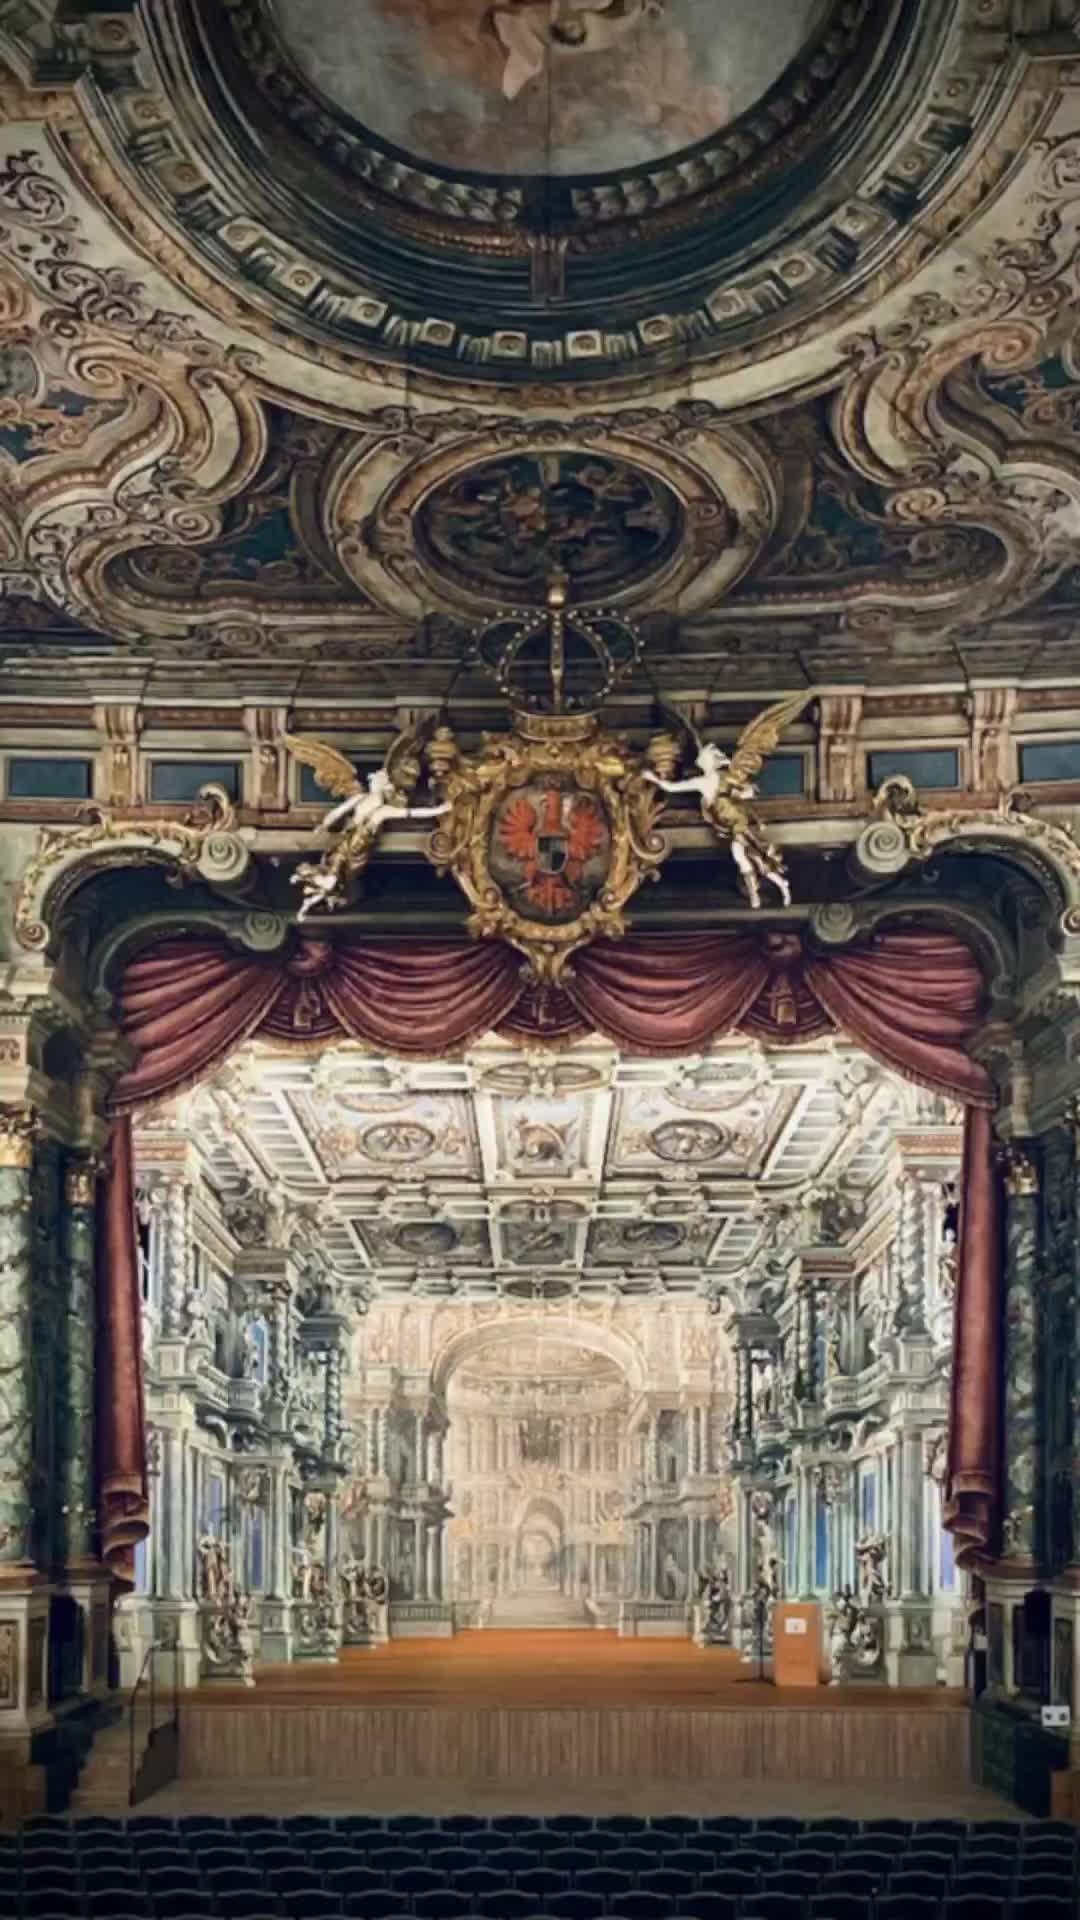 Discover Baroque Splendor at Bayreuth's Opera Museum